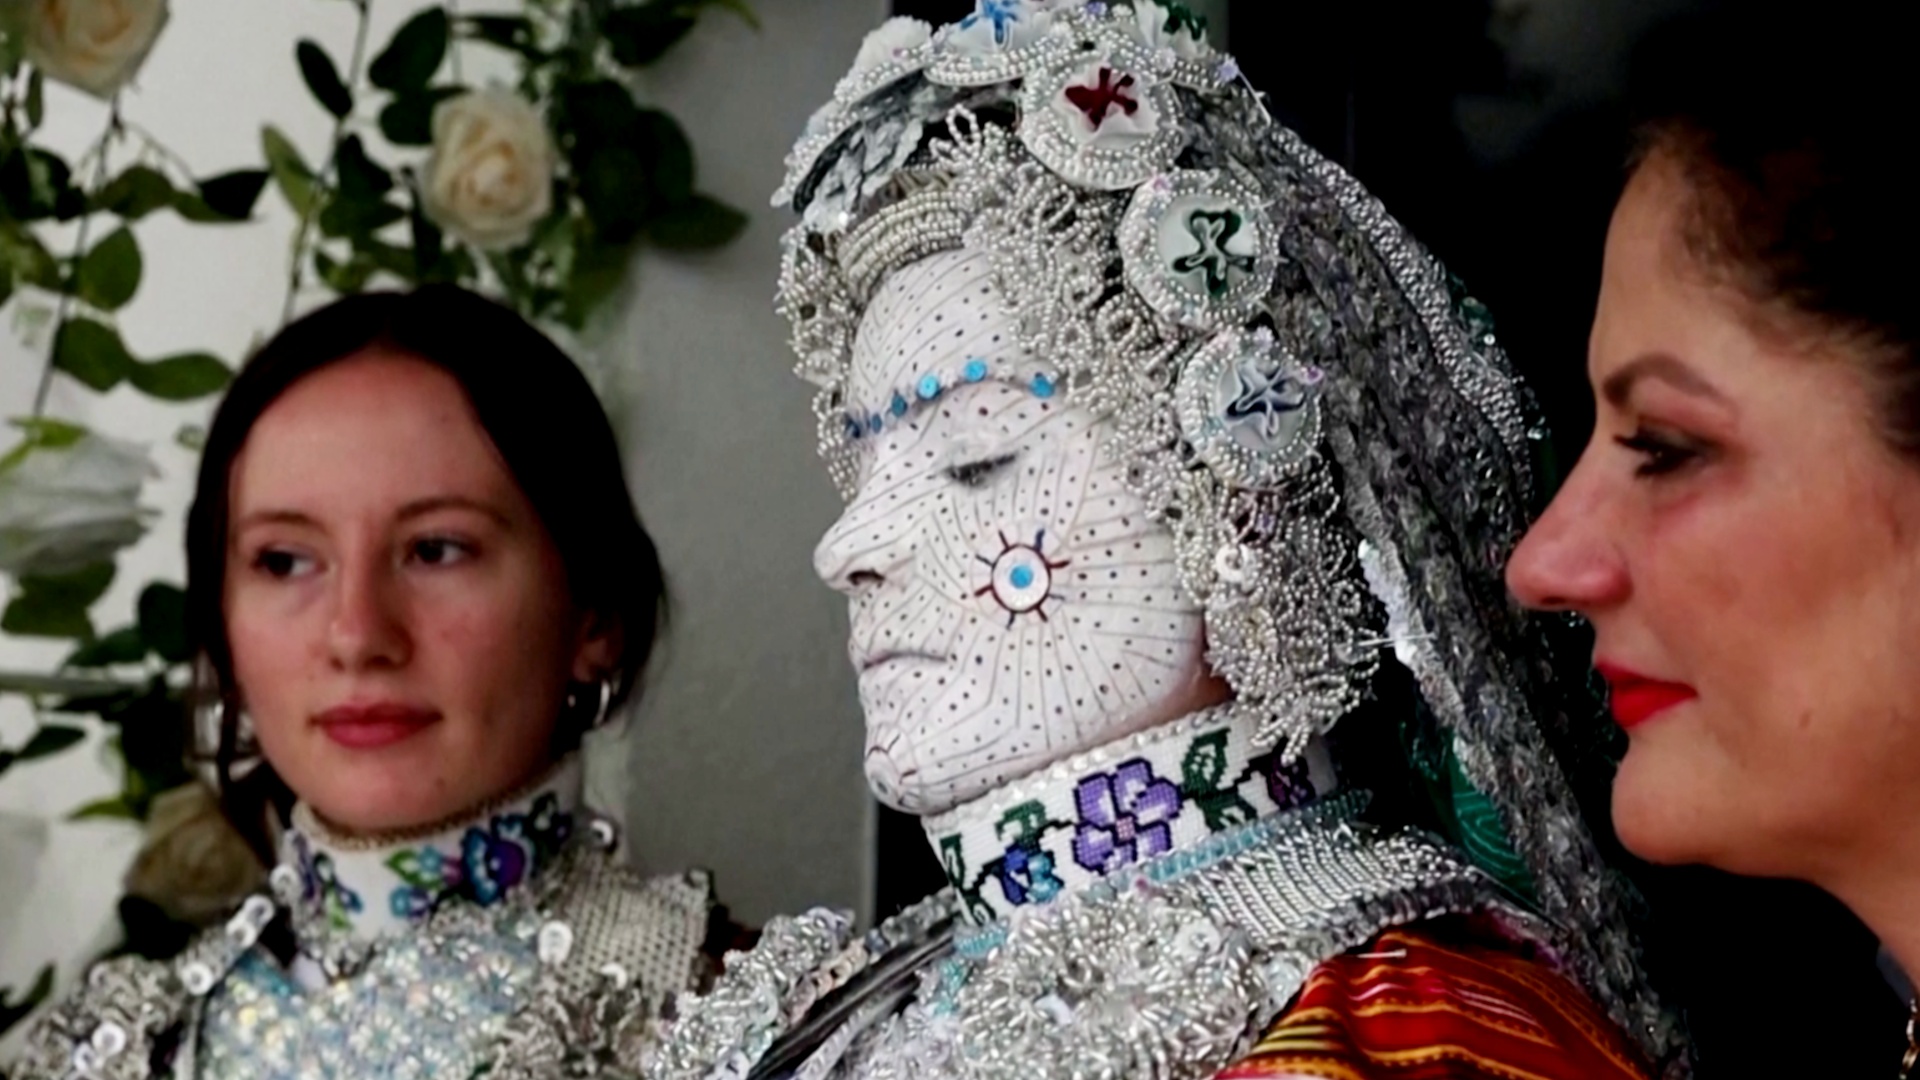 Маска-макияж: древний ритуал на косовской свадьбе